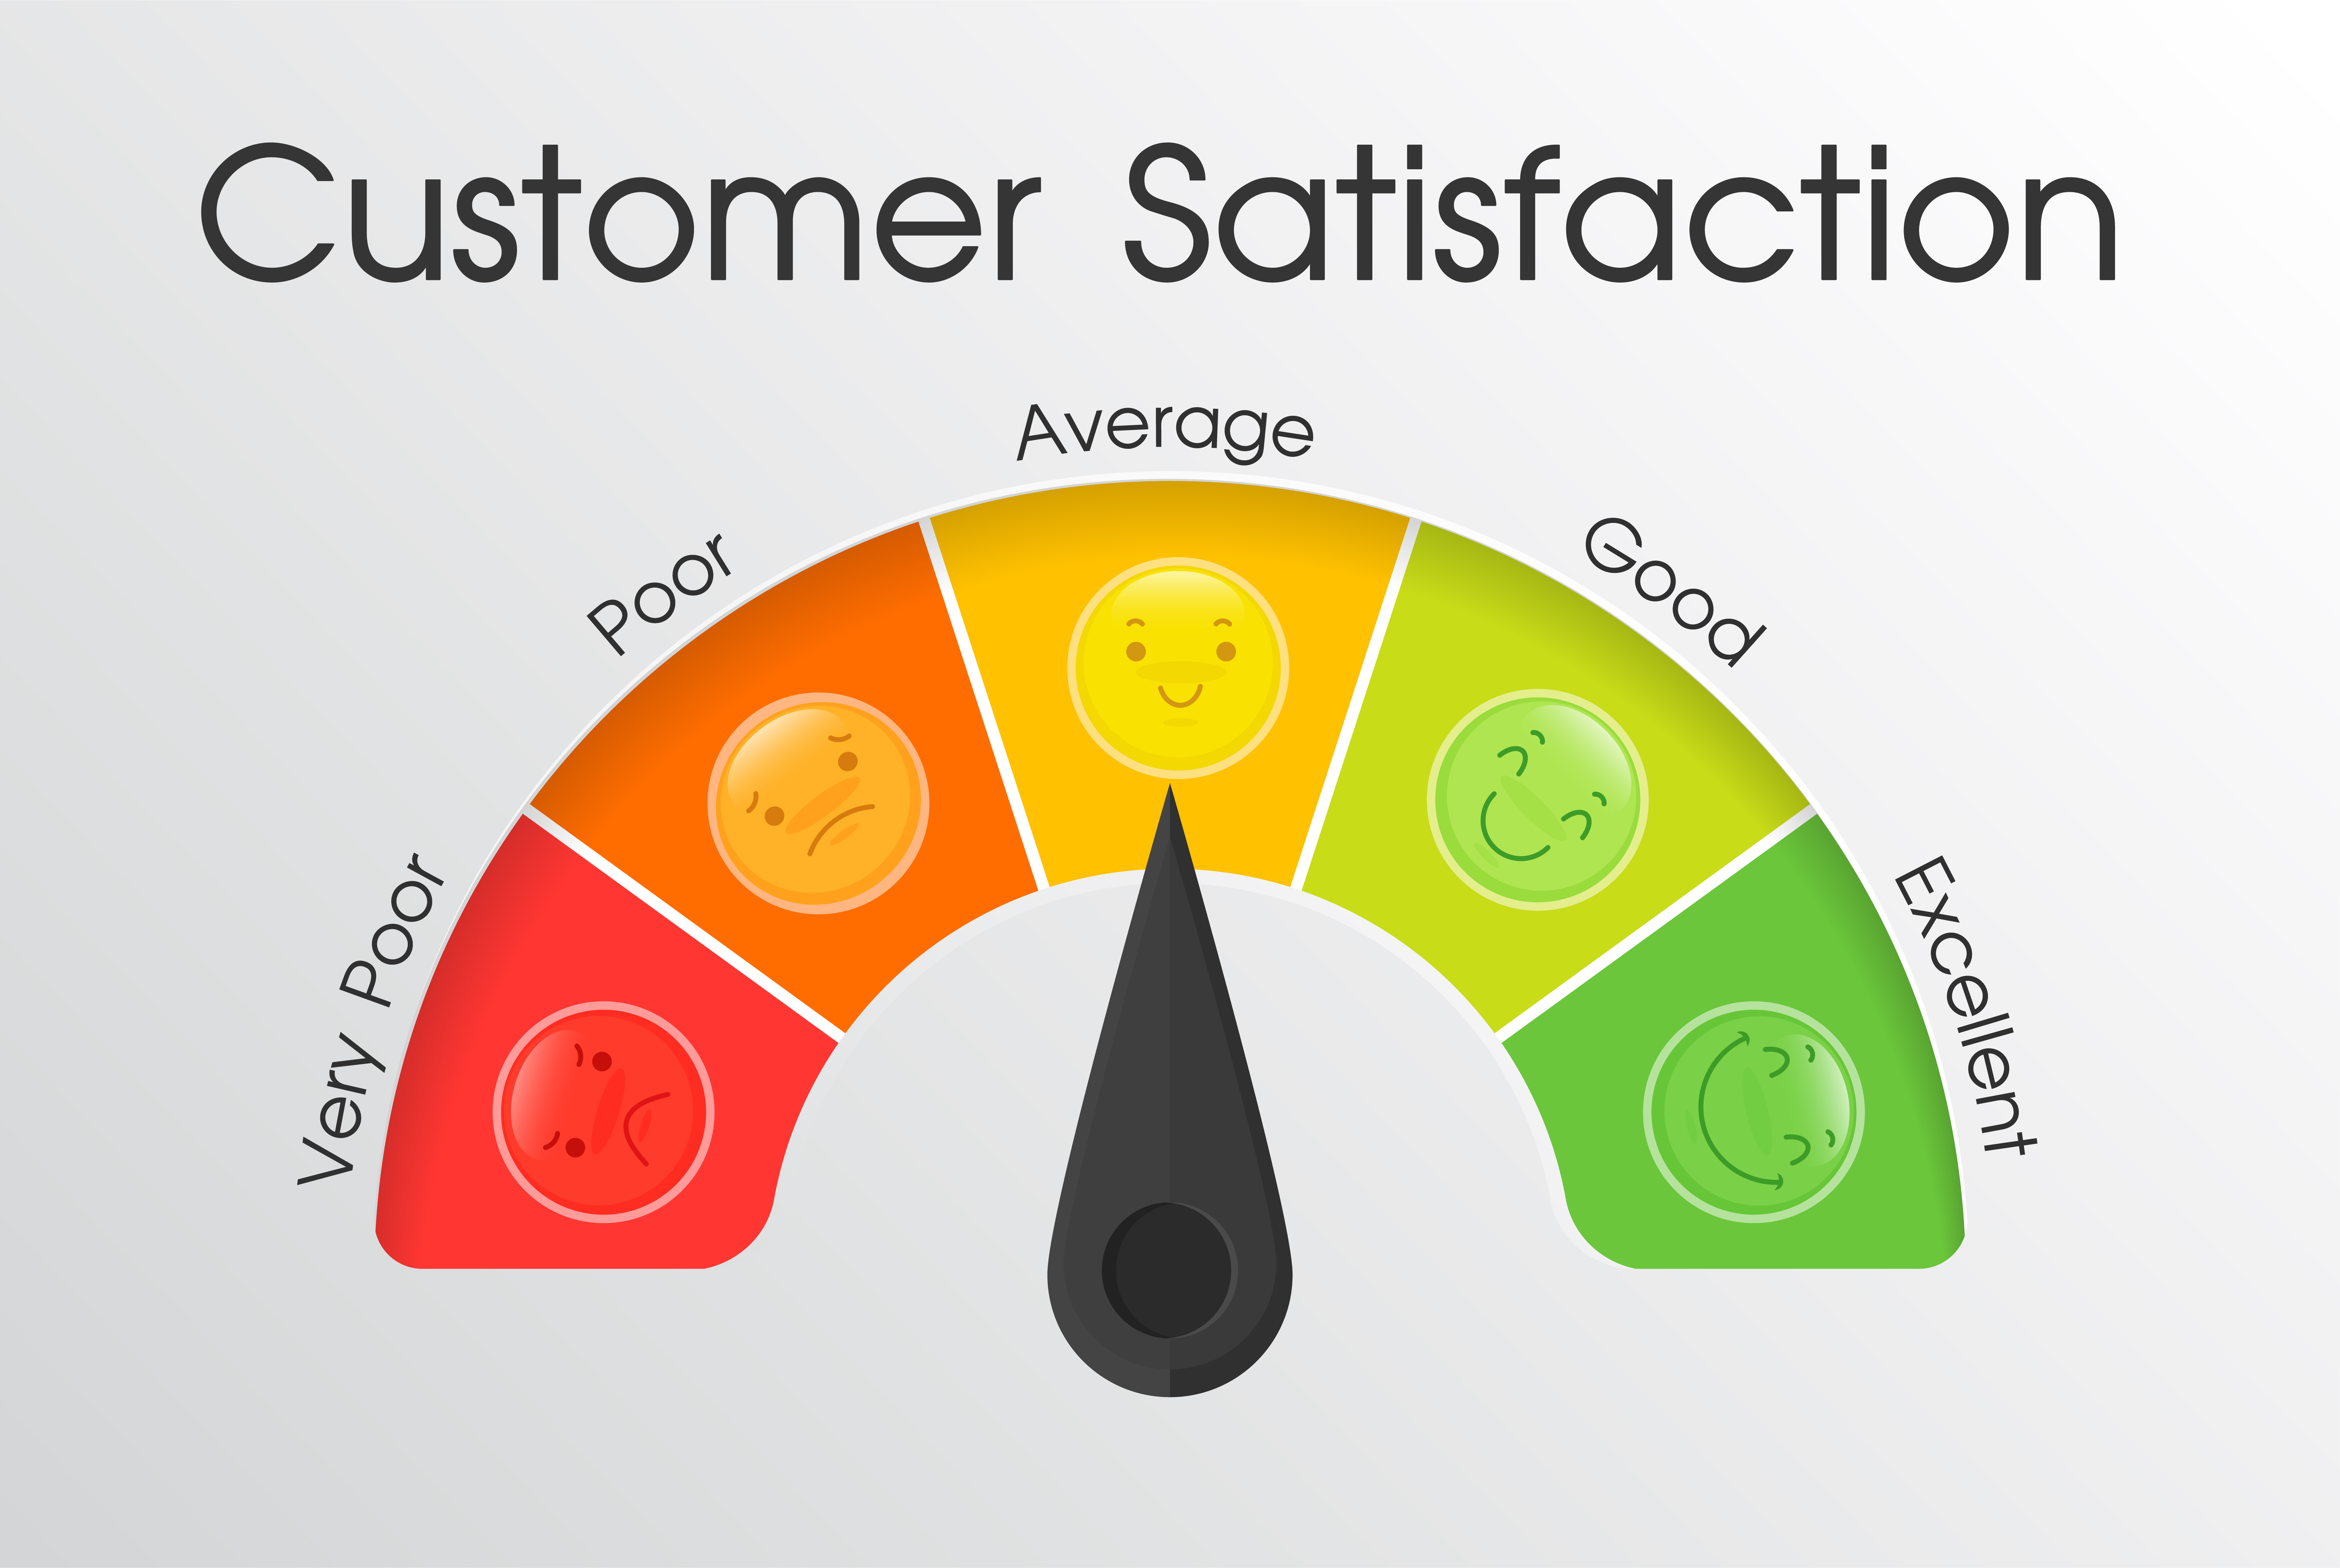 Feeling of satisfaction. Customer satisfaction. Customer service satisfaction. Изображений satisfaction. Customer satisfaction вещи.